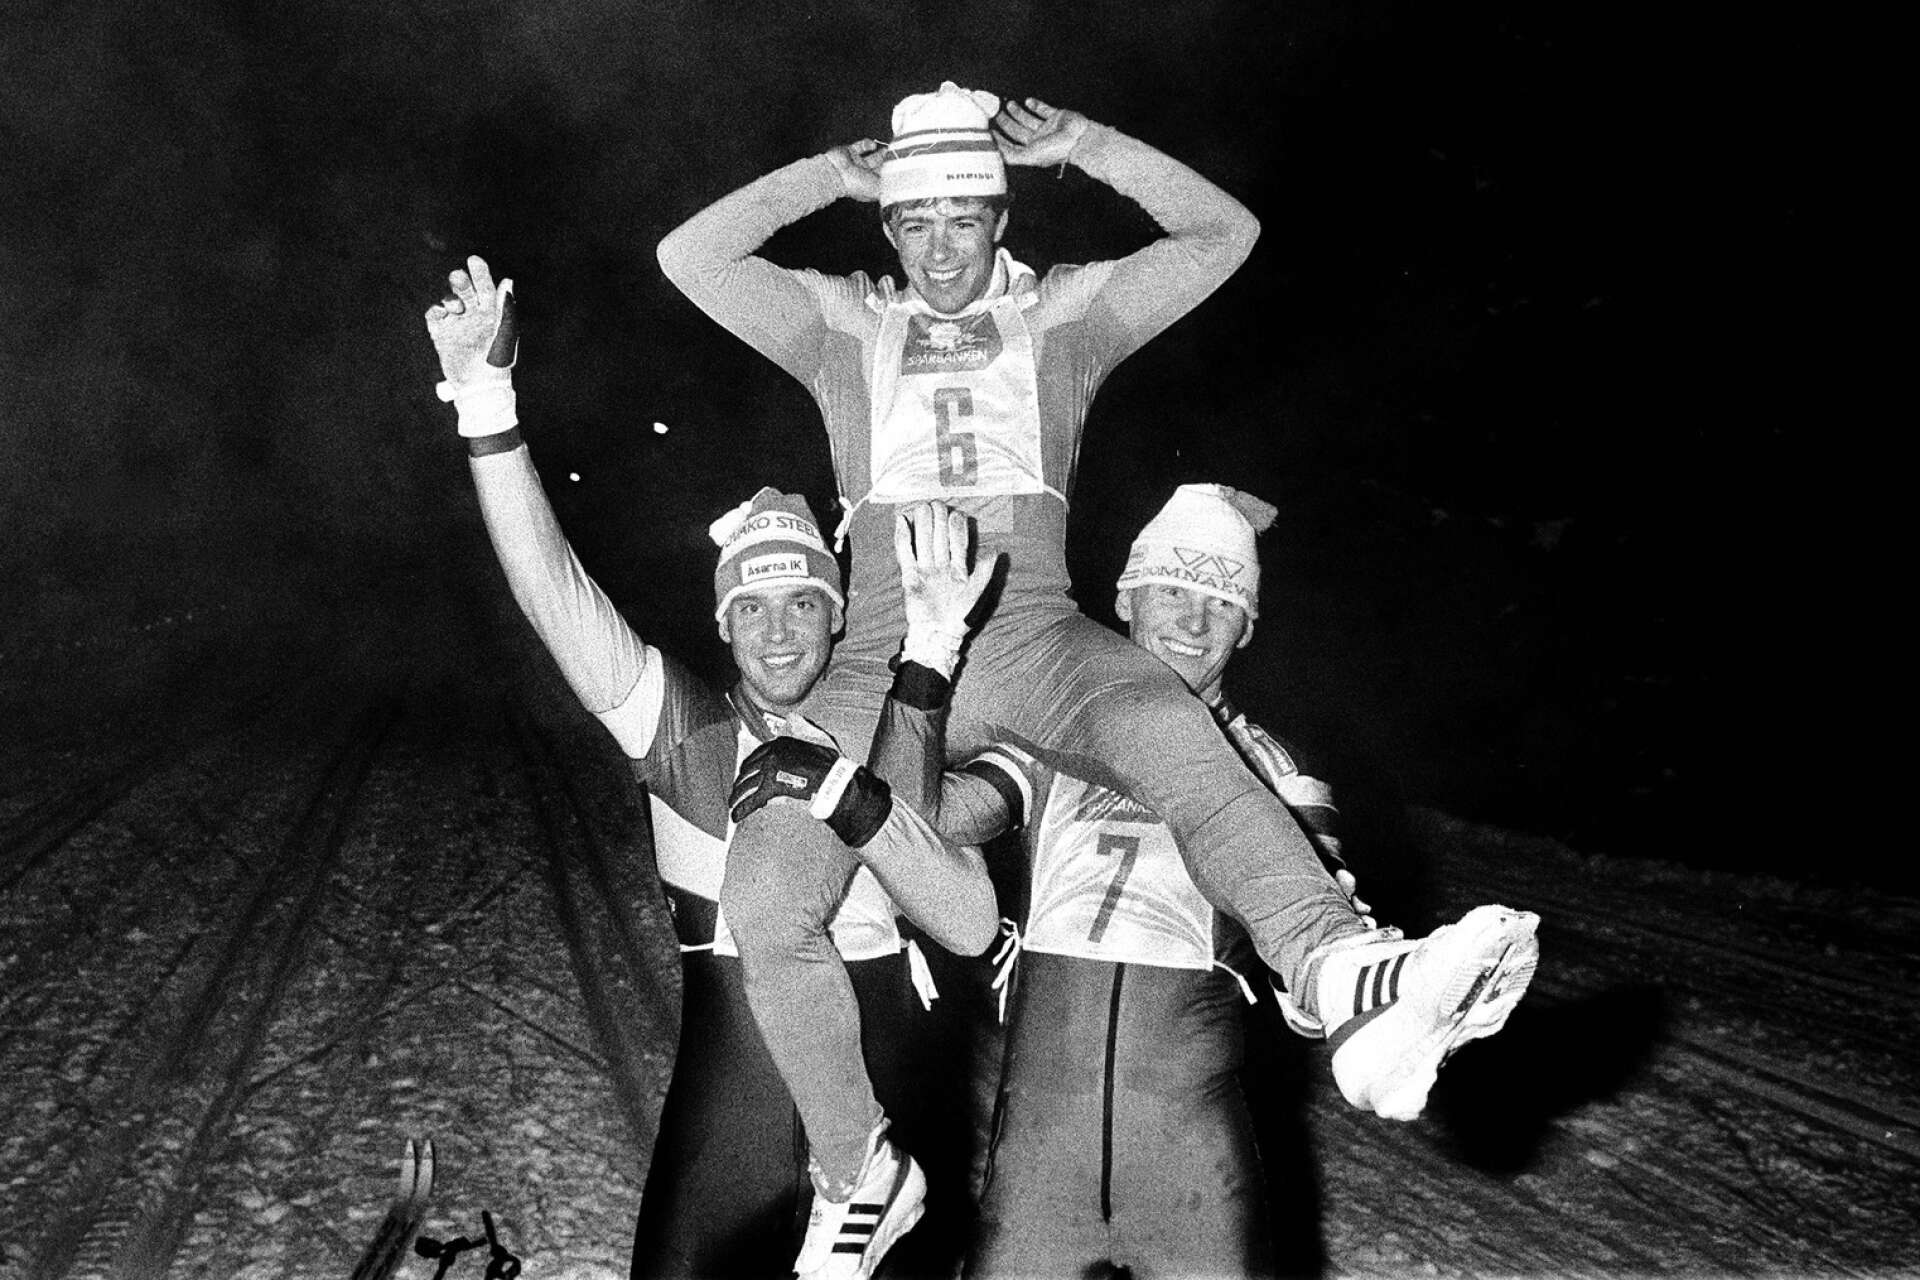 Erik Östlund vann Elitrennet 1986 och 1987. Andra gången hissades han av Torgny Mogren och Thomas Eriksson, Oslovärldsmästaren 1980 som vann loppet i Älgå 1984.